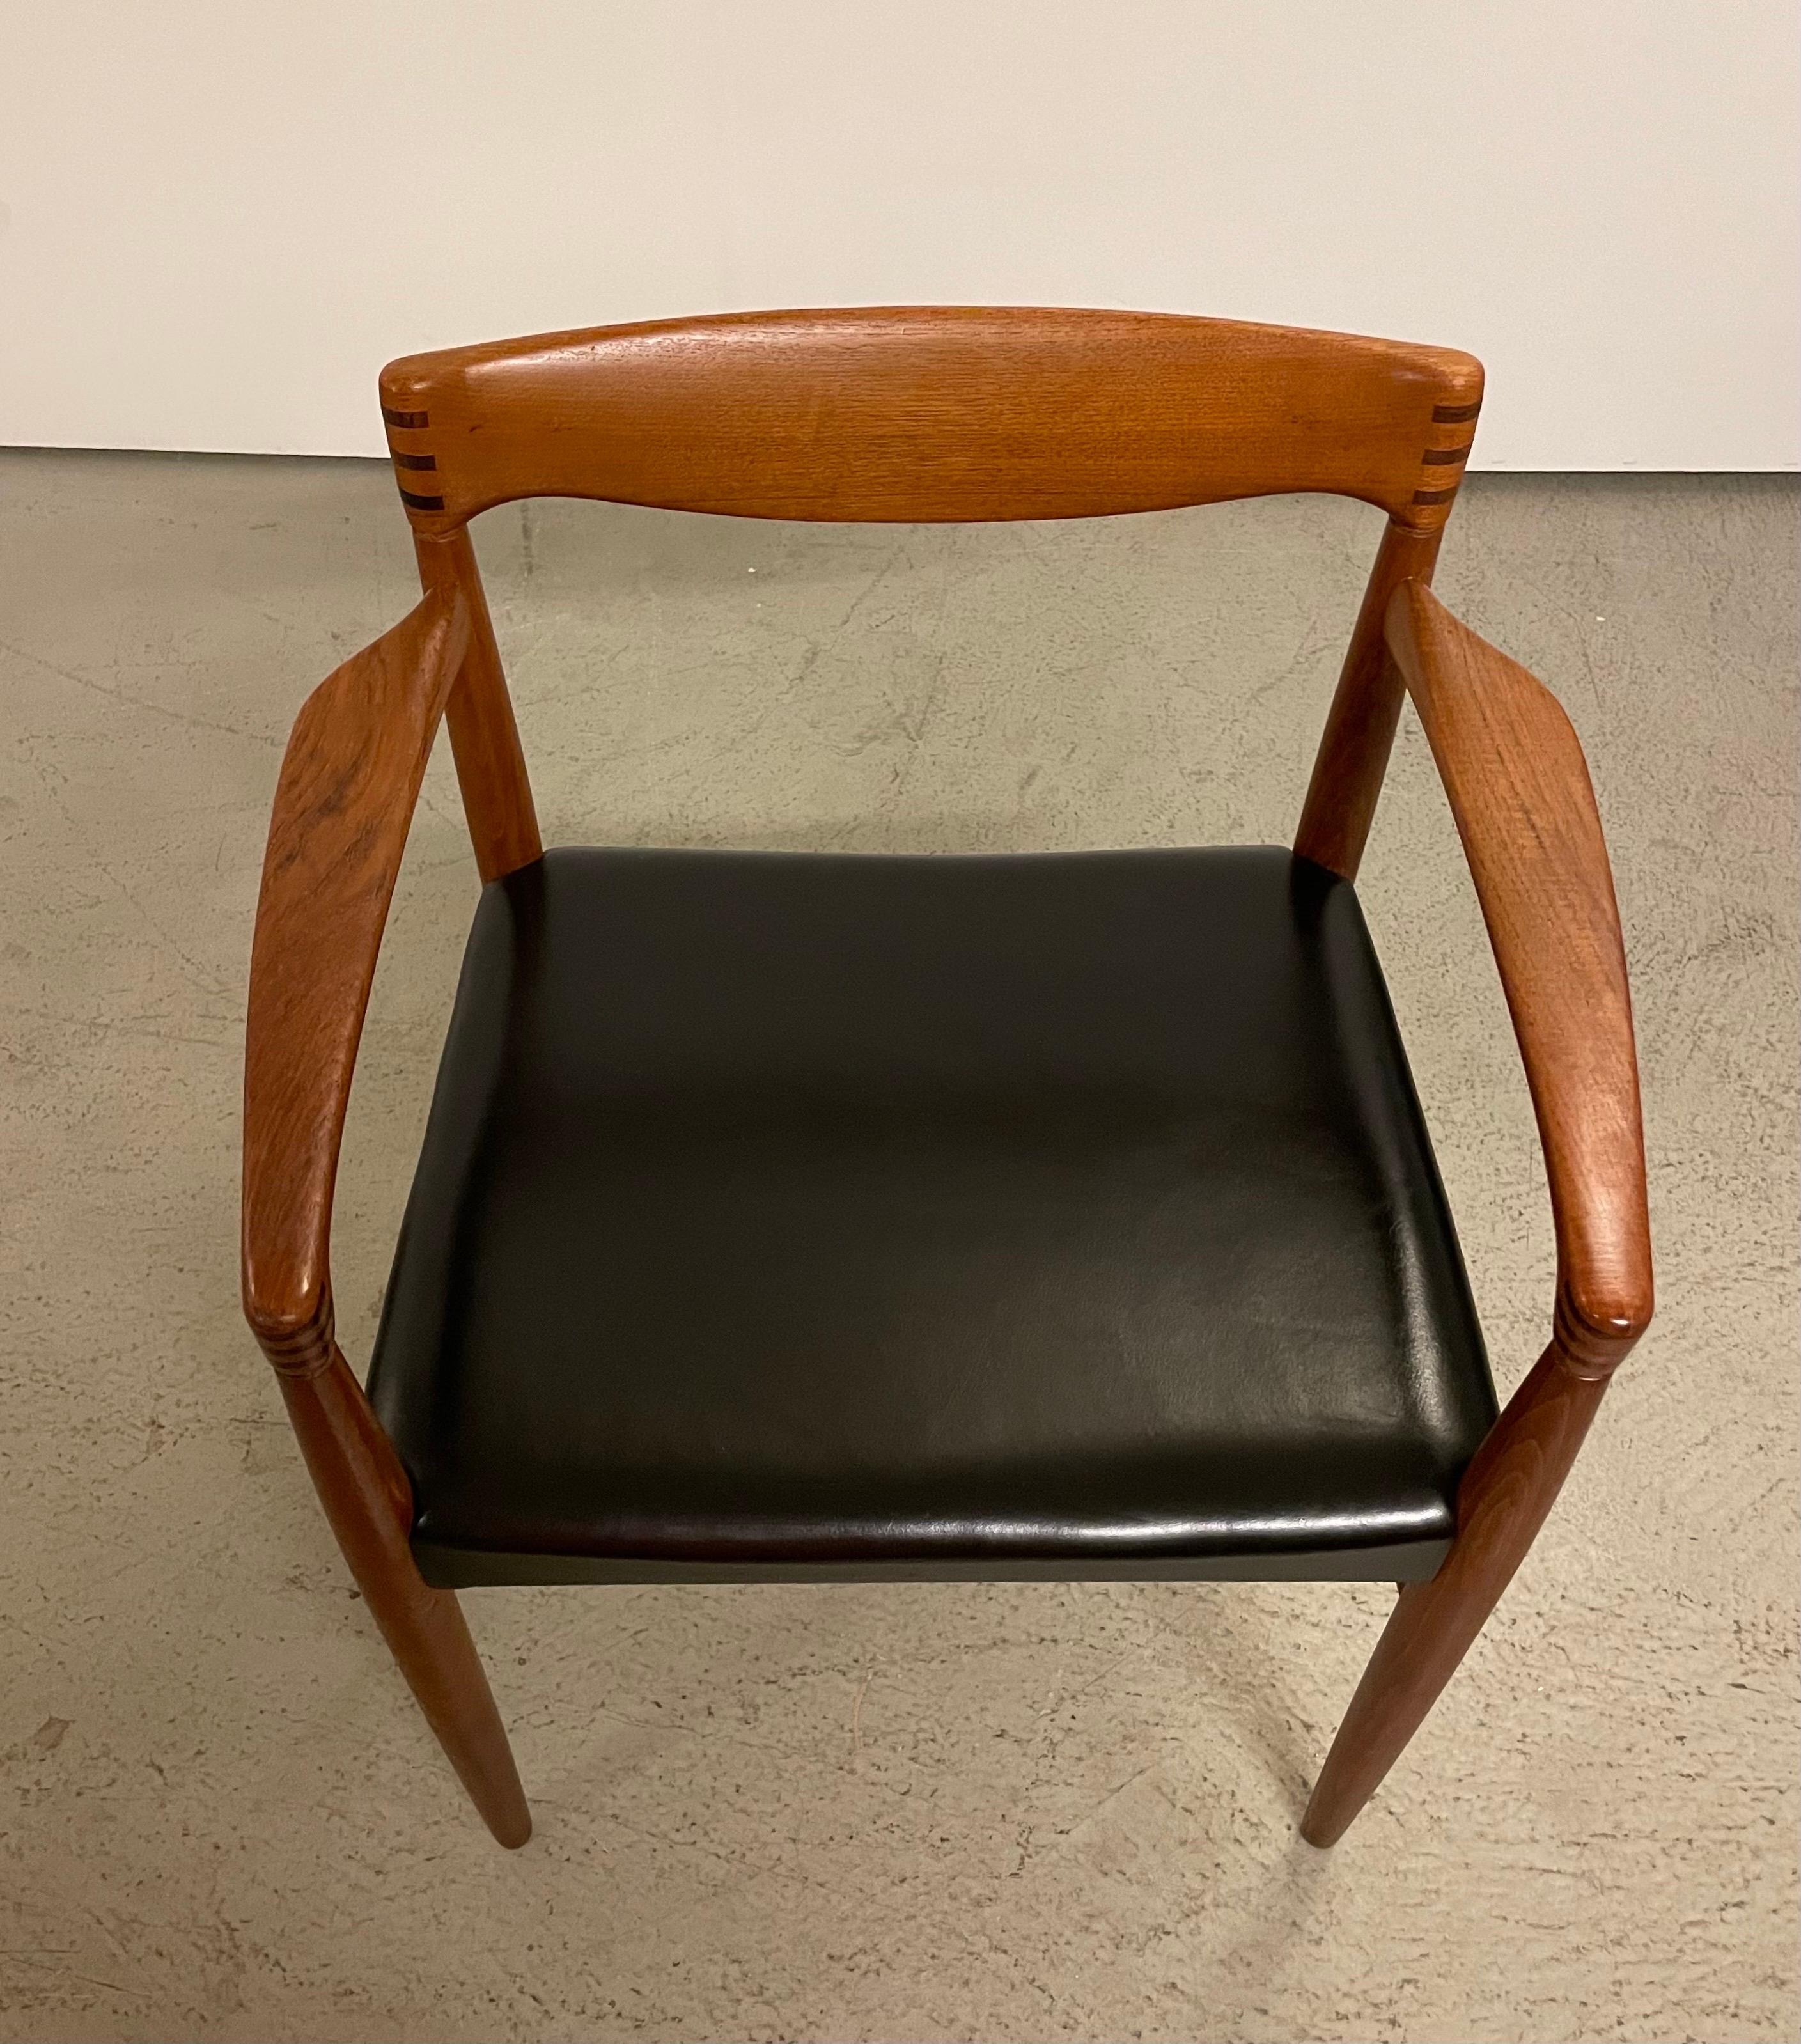 Seltene Armlehnstühle aus Teakholz aus den 1950er Jahren, entworfen von H.W. Klein. Hergestellt in Denamrk von Bramin Mobelfabrik. Massiver Teakholzrahmen mit verzapfter Rückenlehne und Armlehnen. Die Stühle sind mit perfekten Proportionen und Liebe